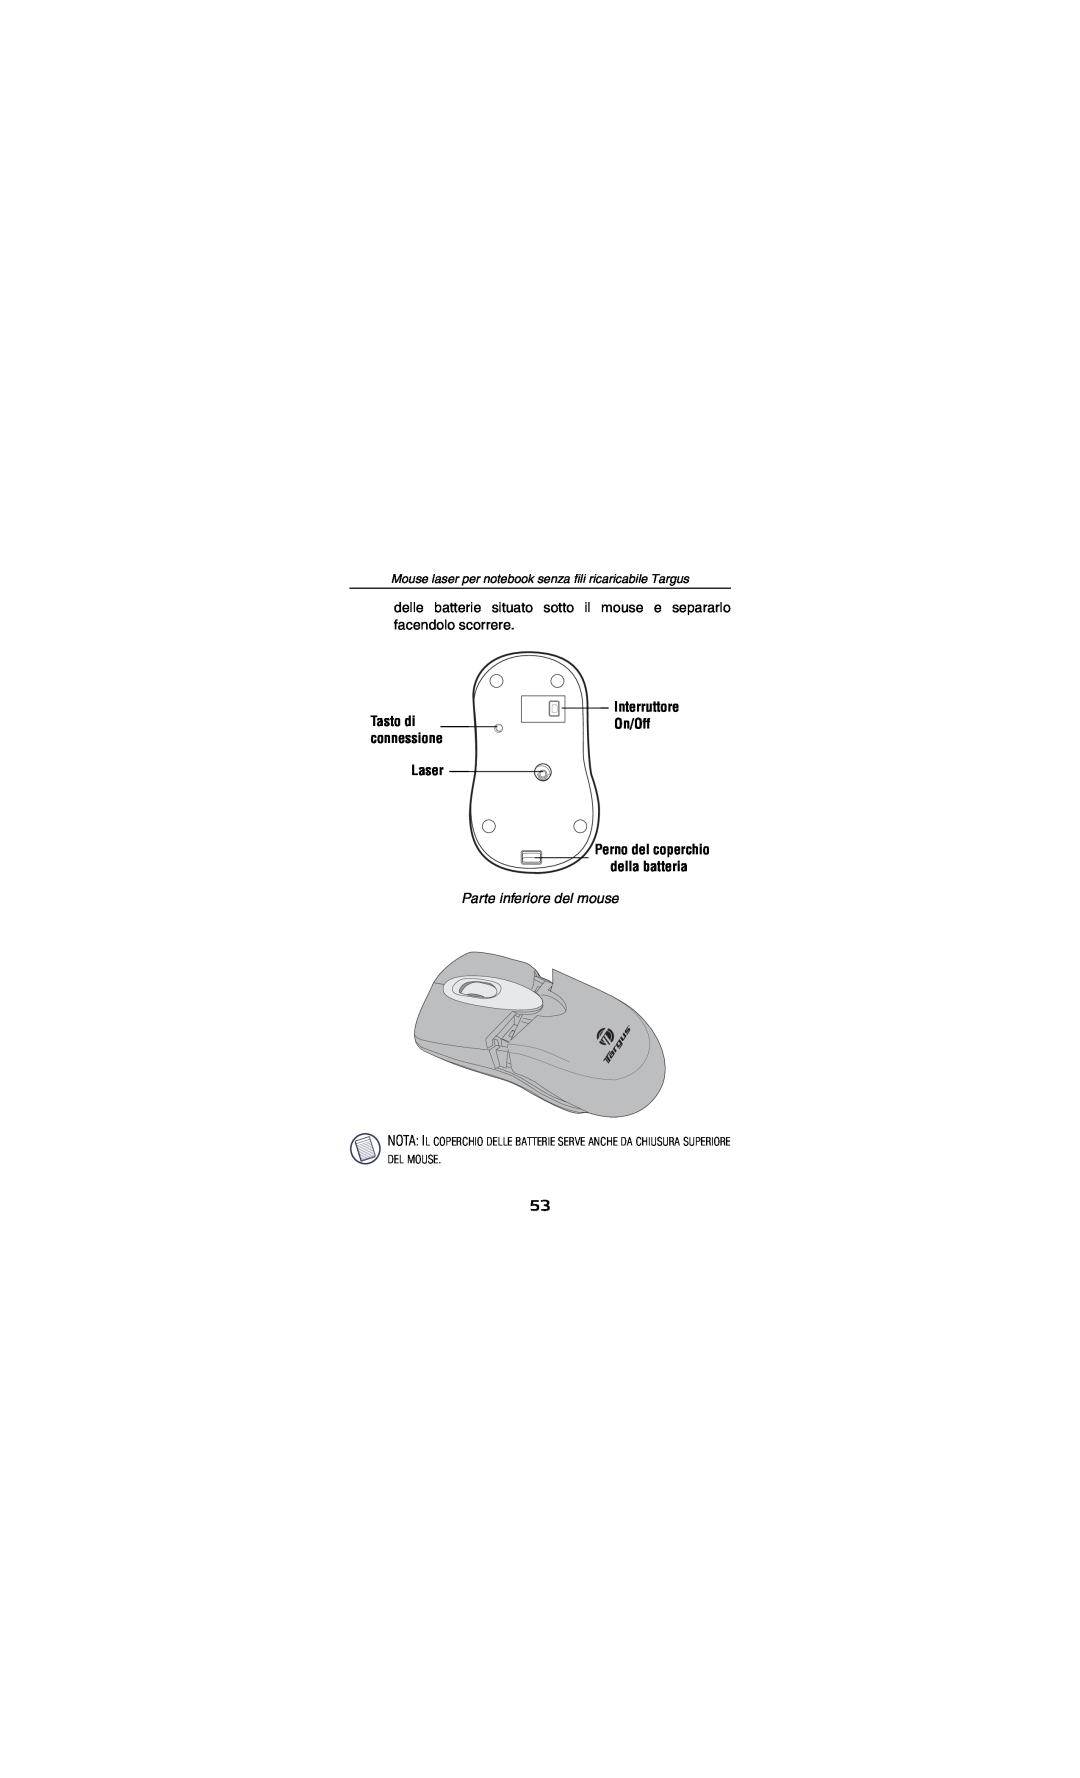 Targus AMW15EU specifications Laser, Parte inferiore del mouse, Interruttore On/Off, Tasto di connessione 